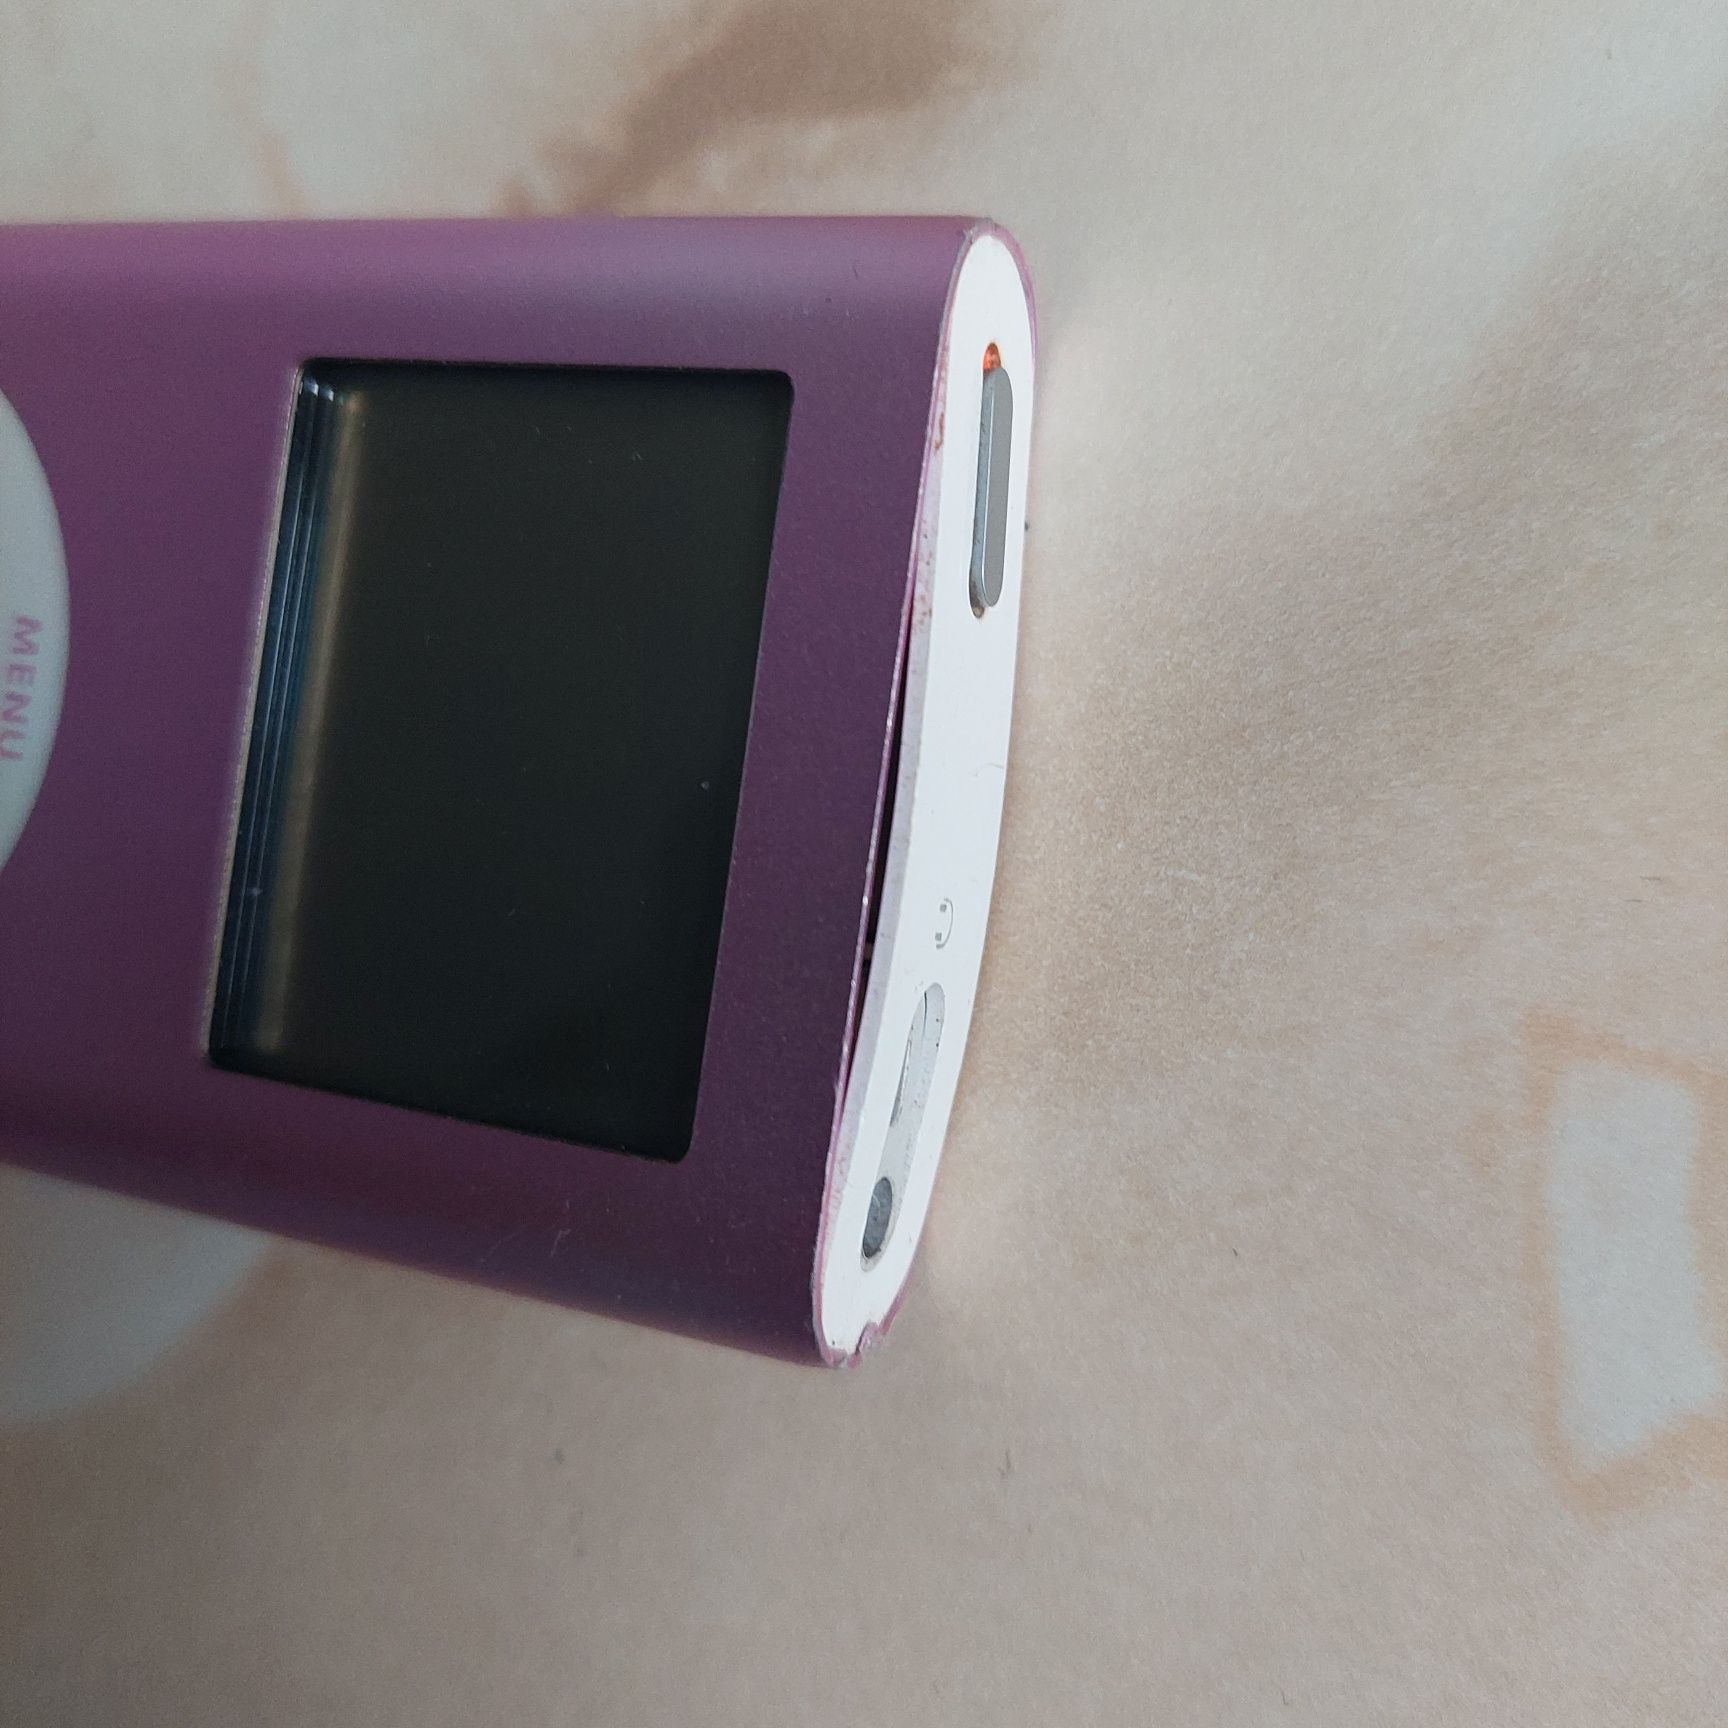 Vând Apple iPod Mini 2nd gen original de 6Gb albastru A1051 poze reale